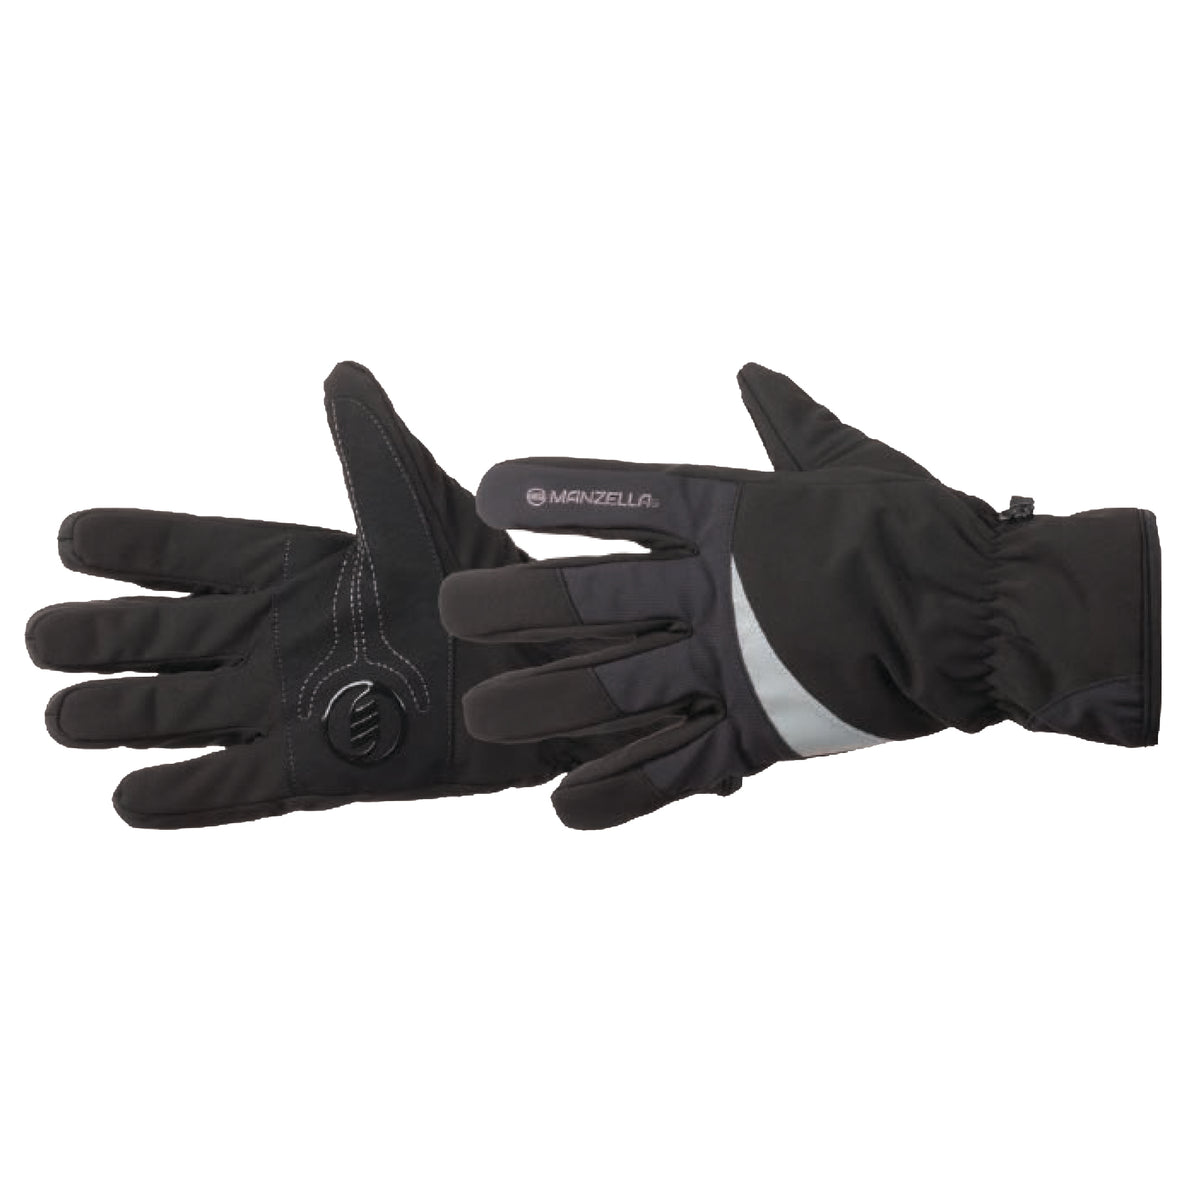 Manzella Men's TALUS Outdoor Gloves